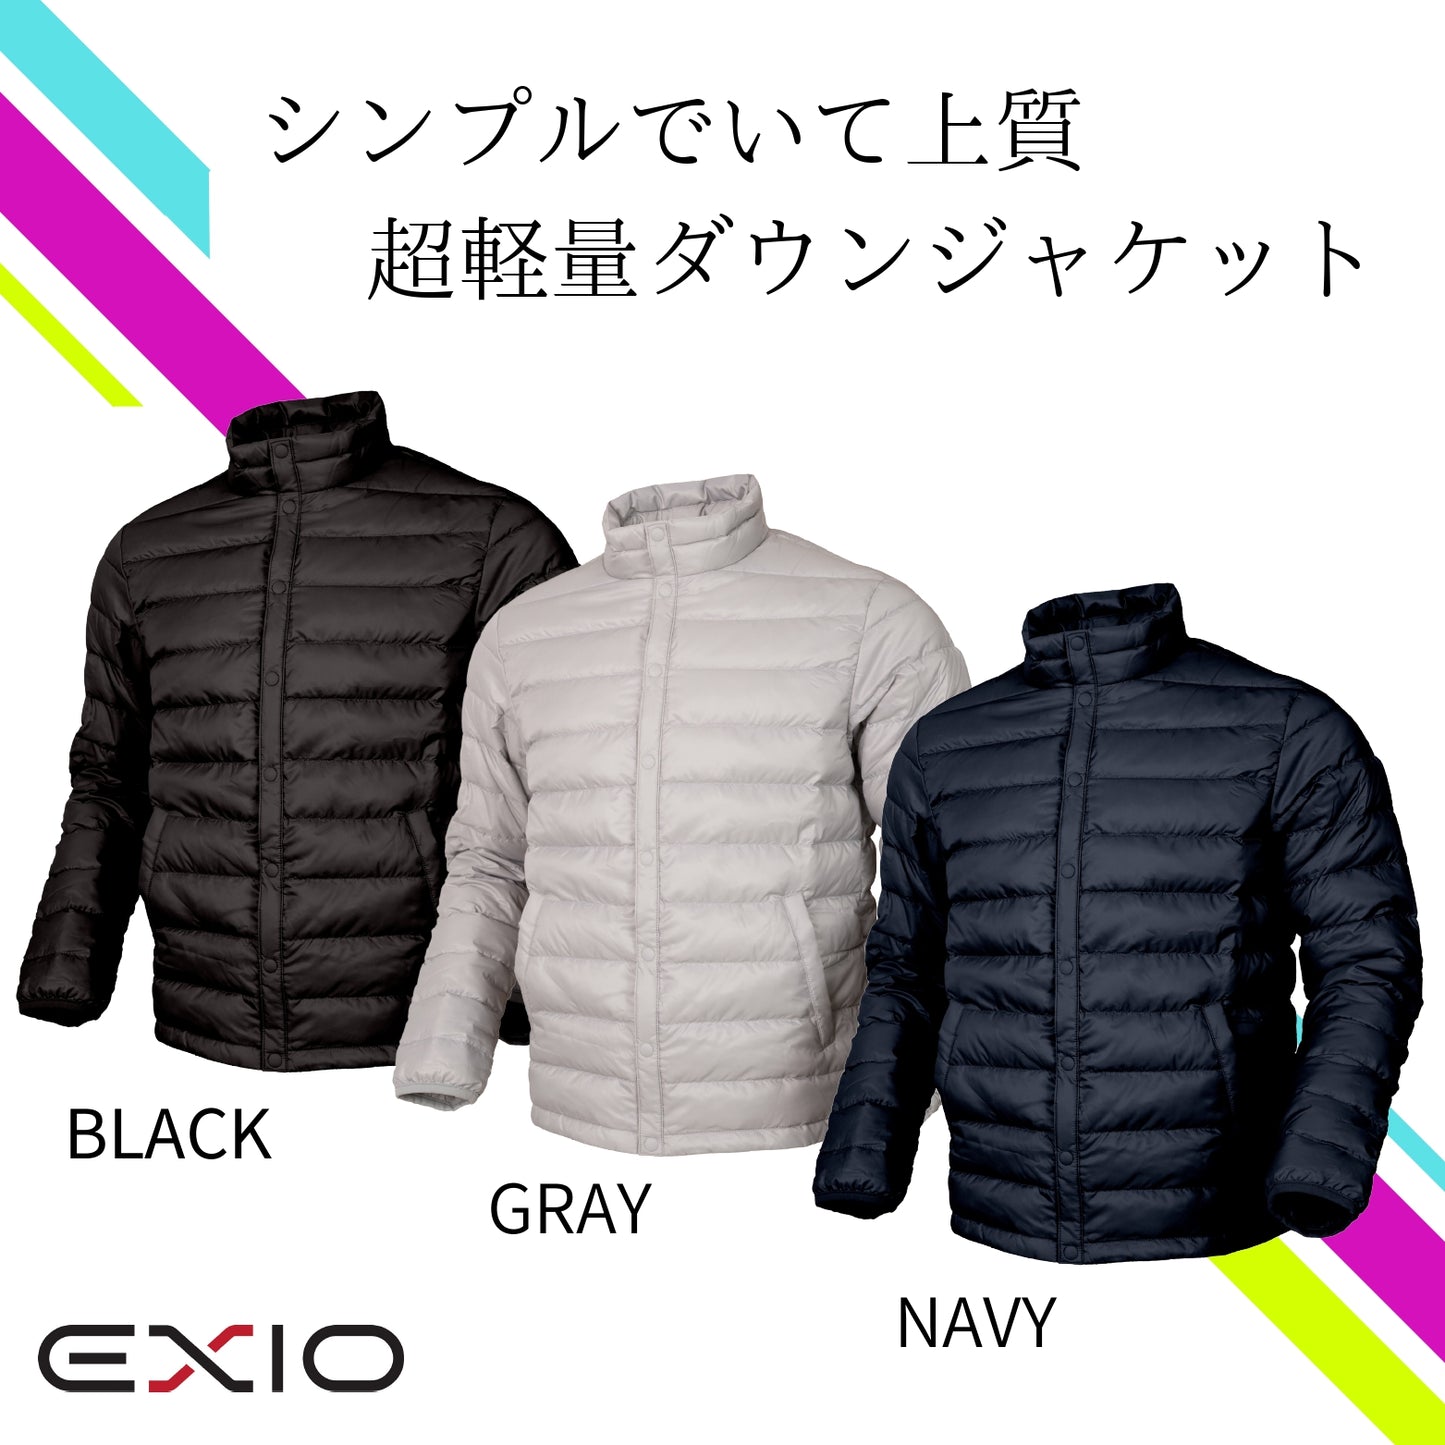 送料無料 EXIO エクシオ プレミアムライトダウンジャケット 3色 M L XL EX-WN01